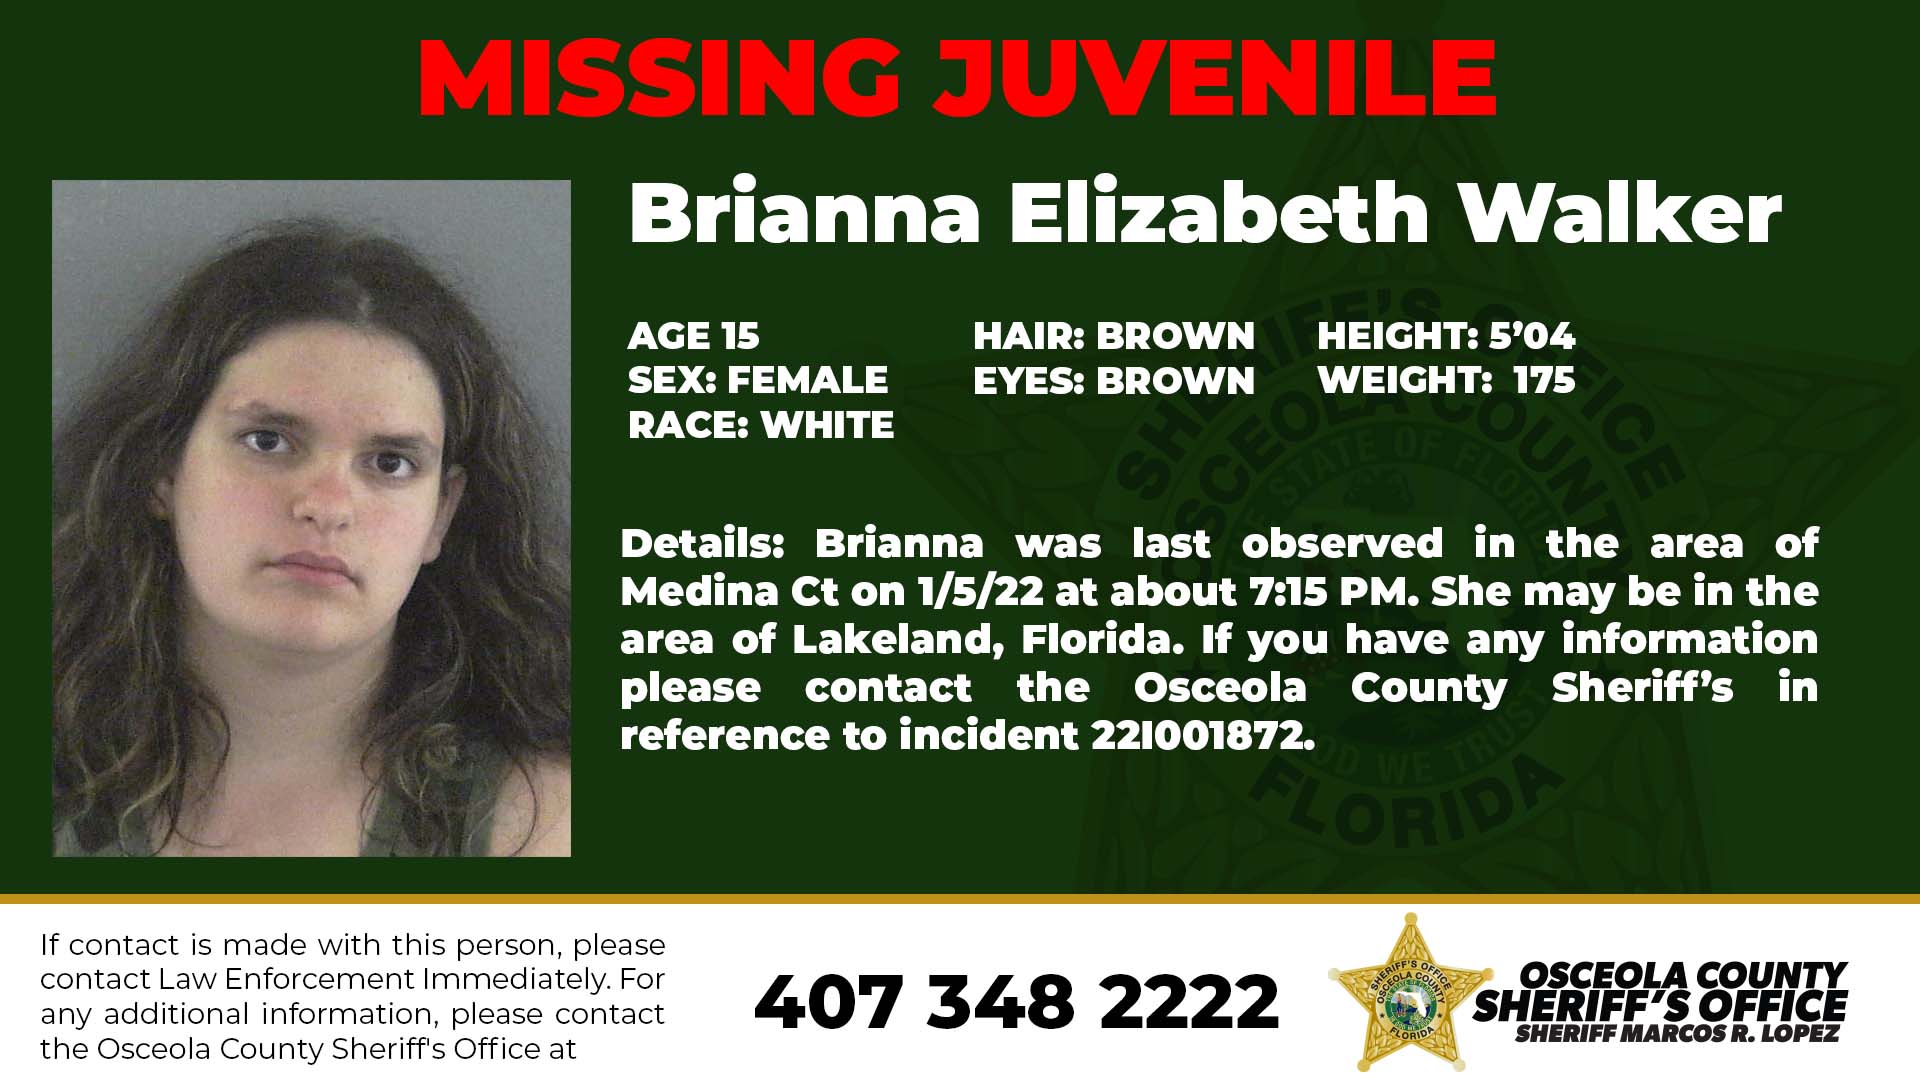 Missing Juvenile - Brianna Elizabeth Walker